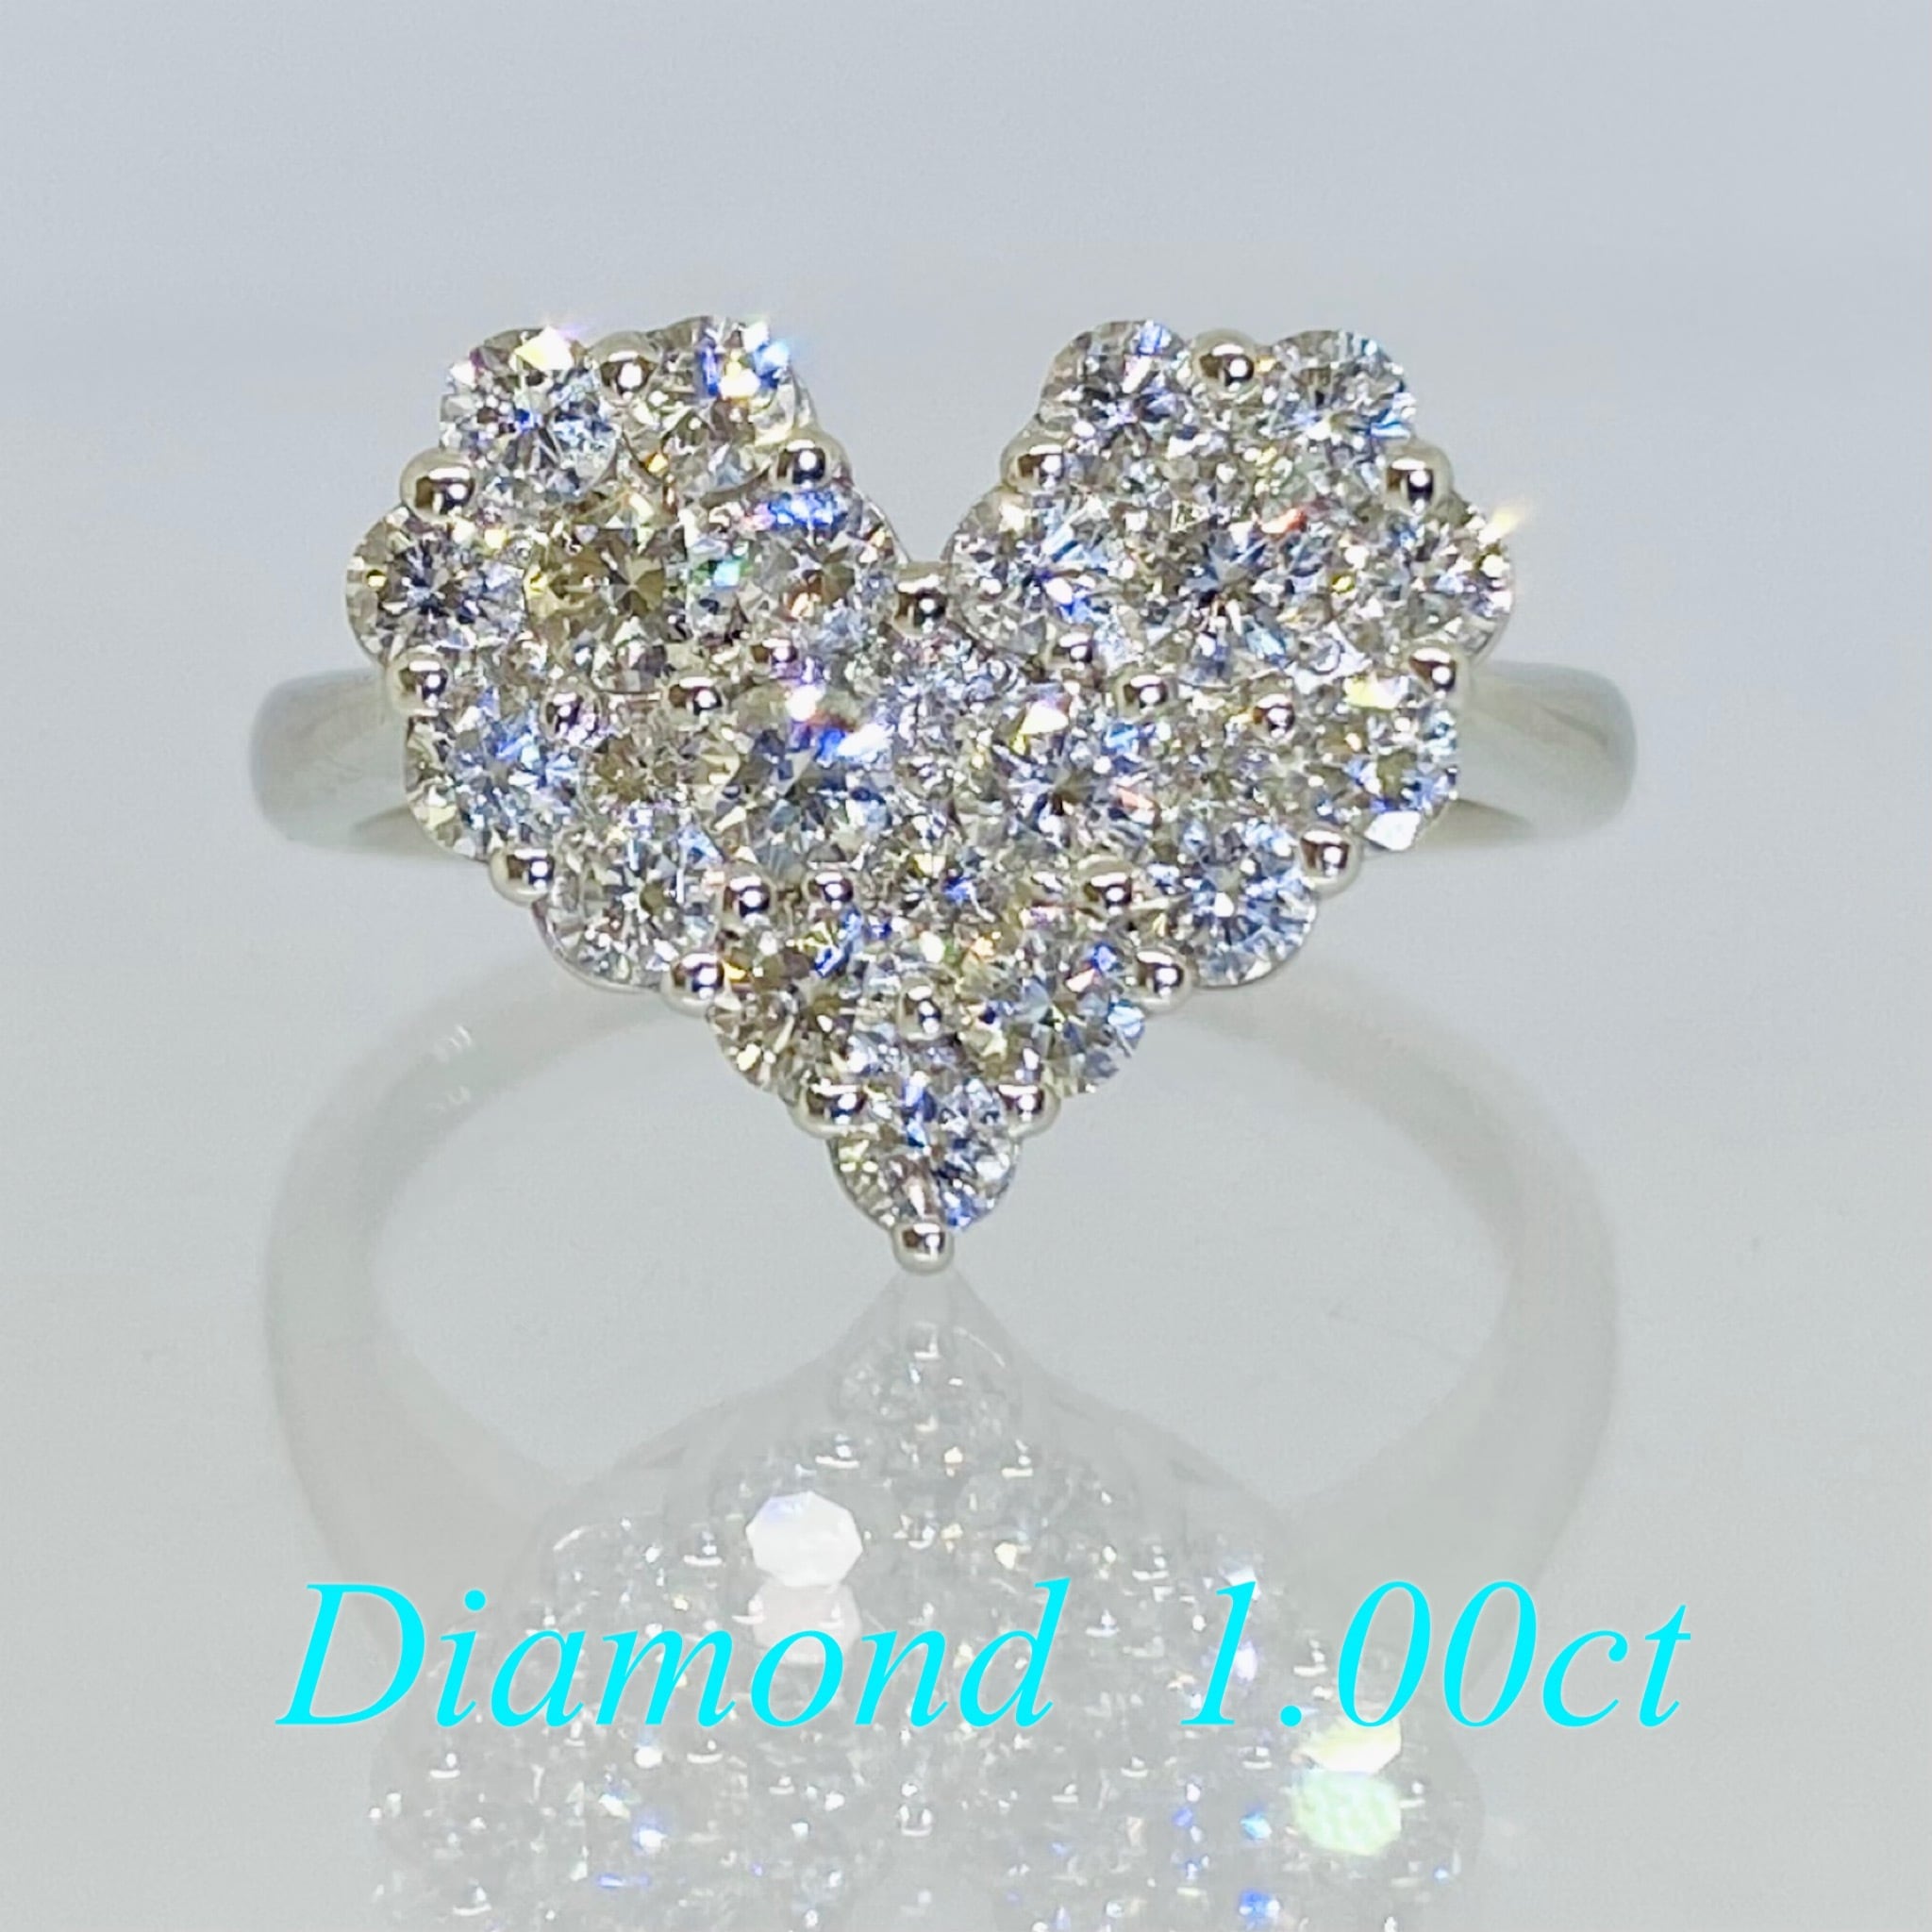 天然ダイヤモンド 1.00ct プラチナ ネックレス フラワーモチーフ